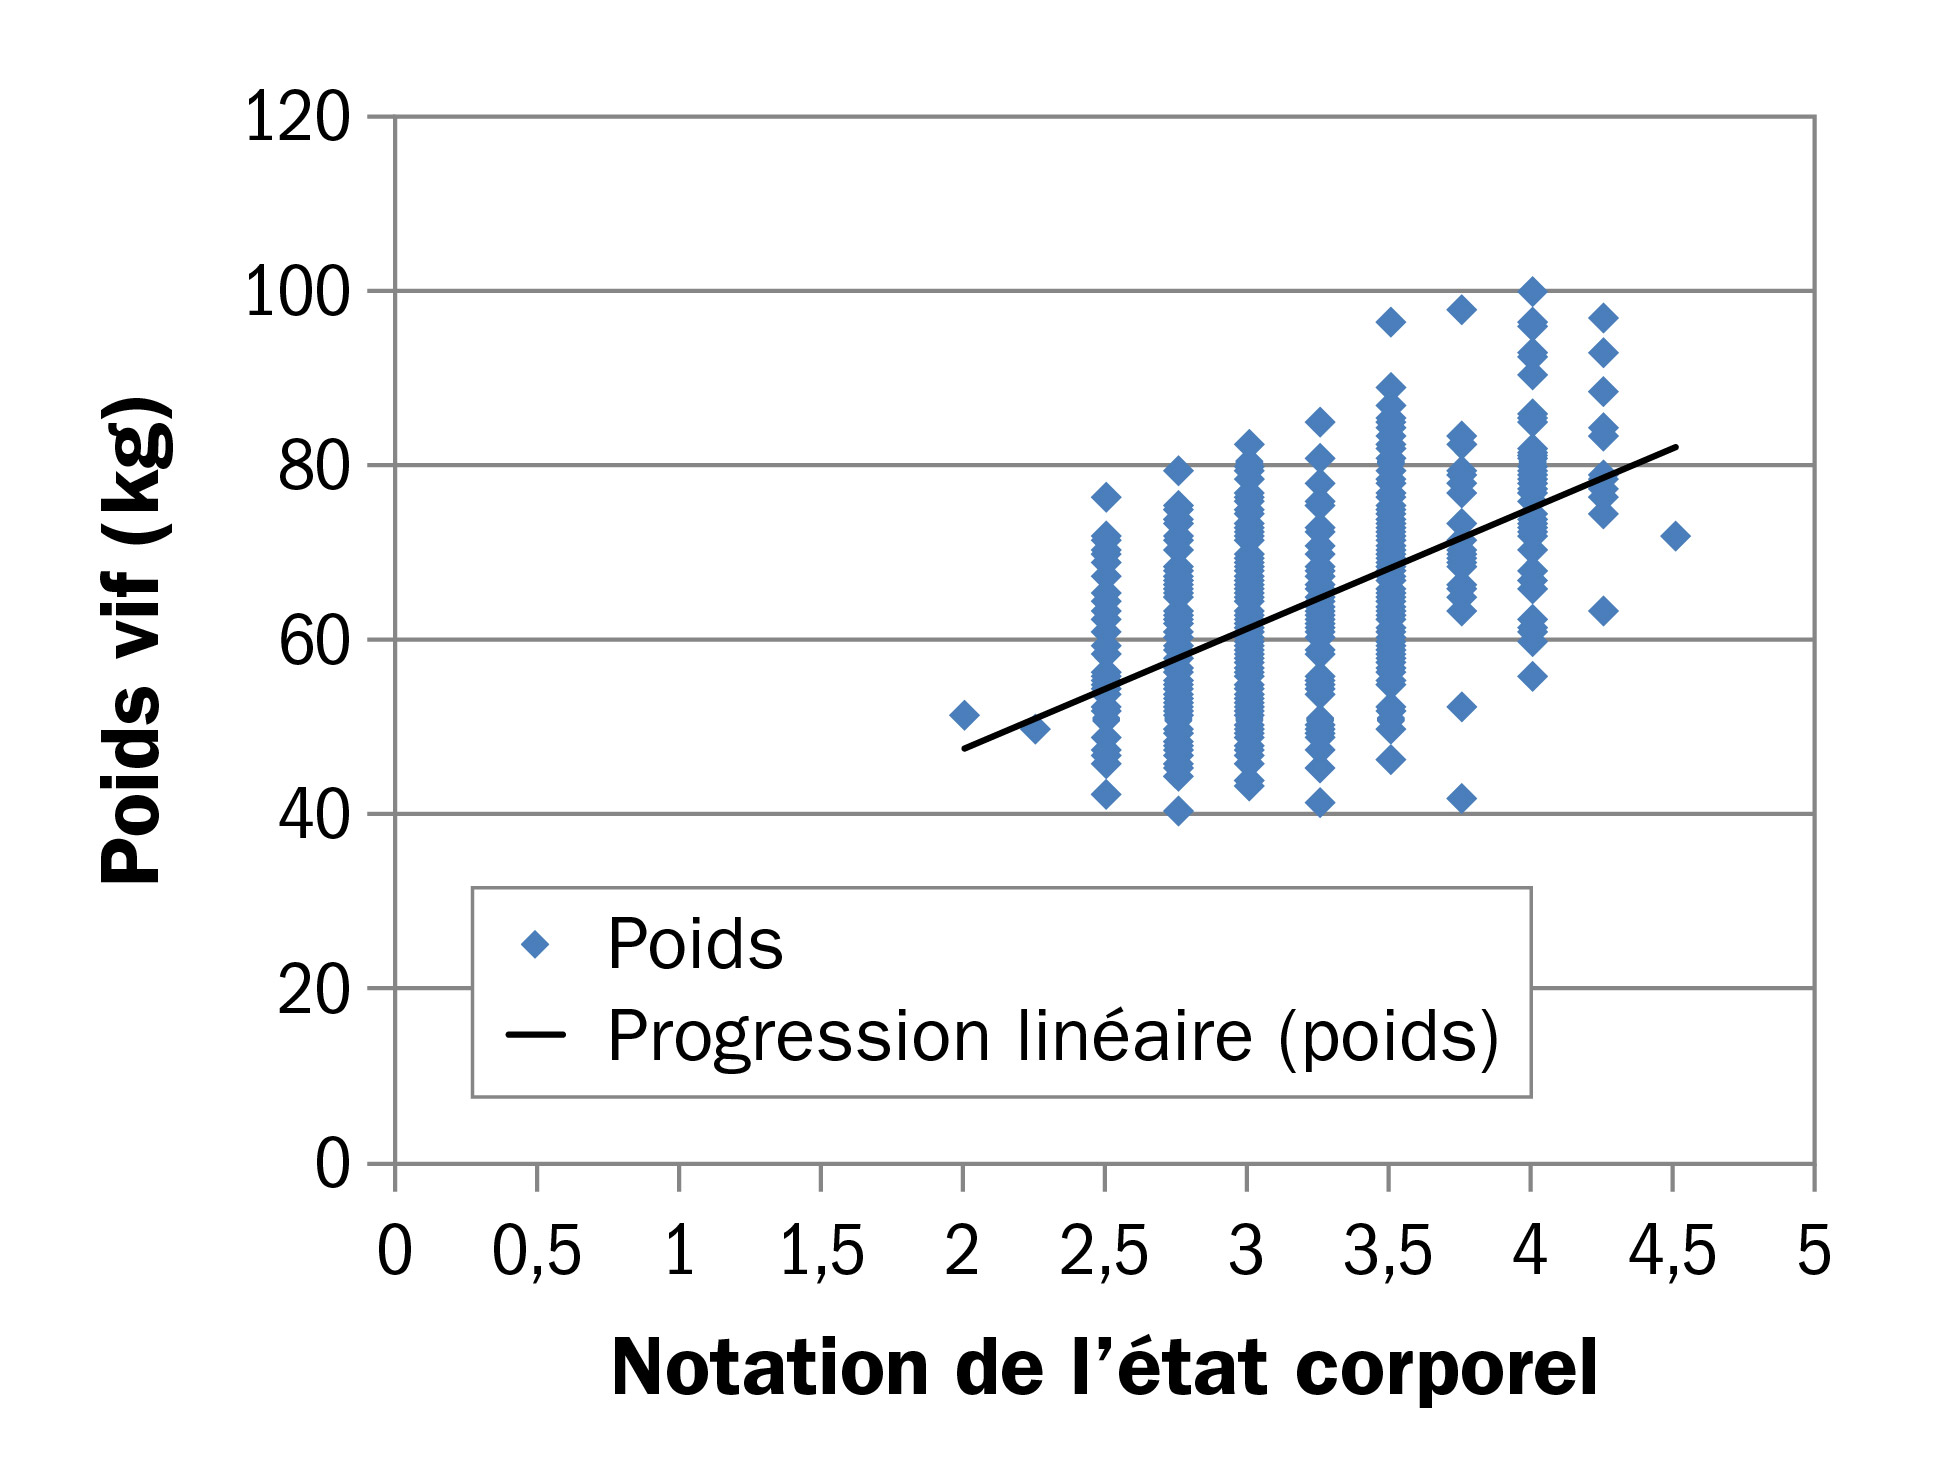 Diagramme de dispersion montrant des poids vifs de 0 à 120 kilogrammes à gauche et les indices de l’état corporel de 0 à 5 sur l’axe horizontal. Une grappe de points est illustrée entre les indices 2 à 5.